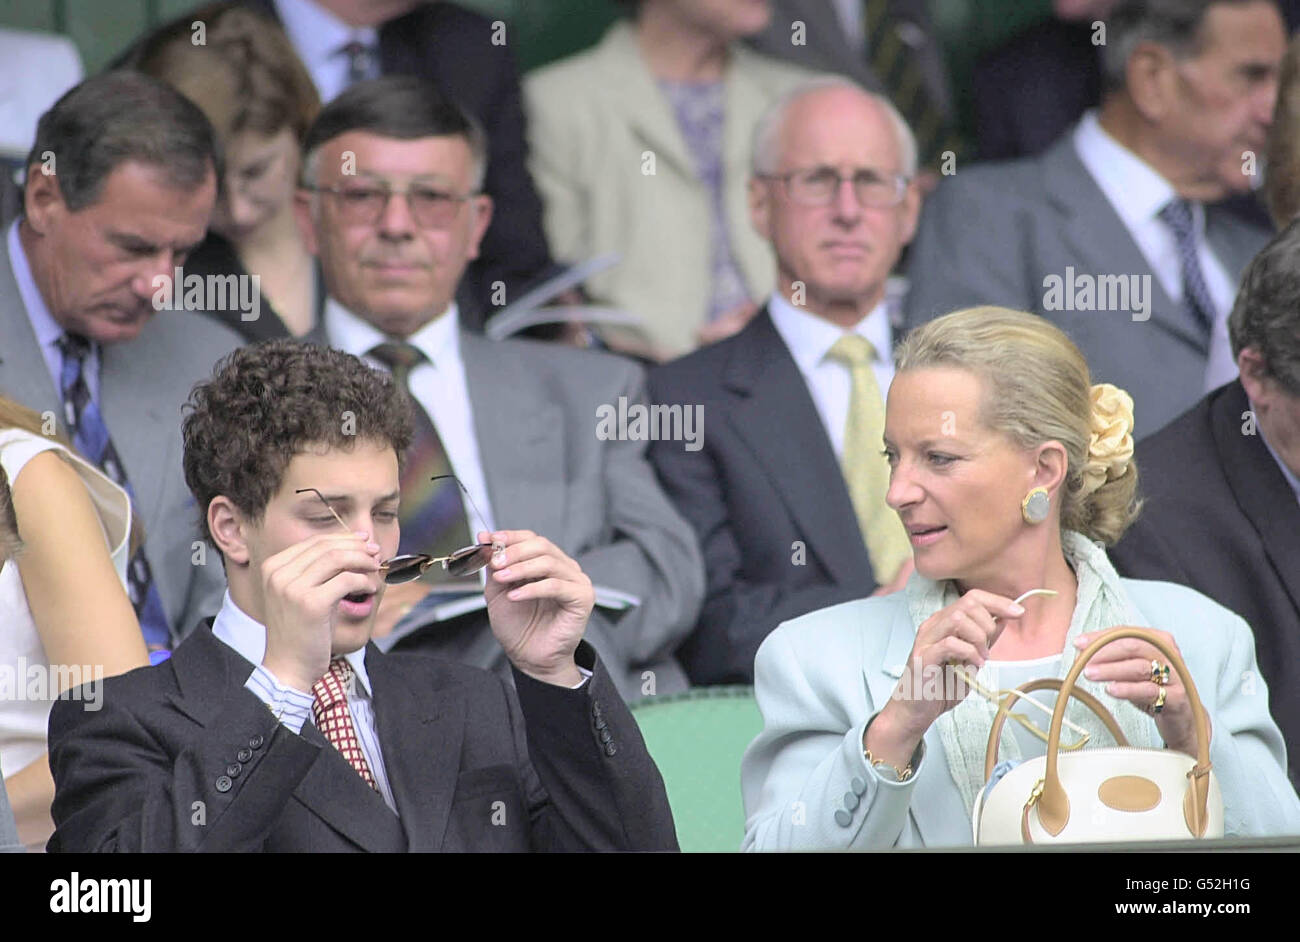 NESSUN USO COMMERCIALE: Lord Frederick Windsor e sua madre Principessa Michael di Kent nella Royal Box del centro di Wimbledon, dove hanno guardato Martina Hingis contro Venus Williams. Foto Stock